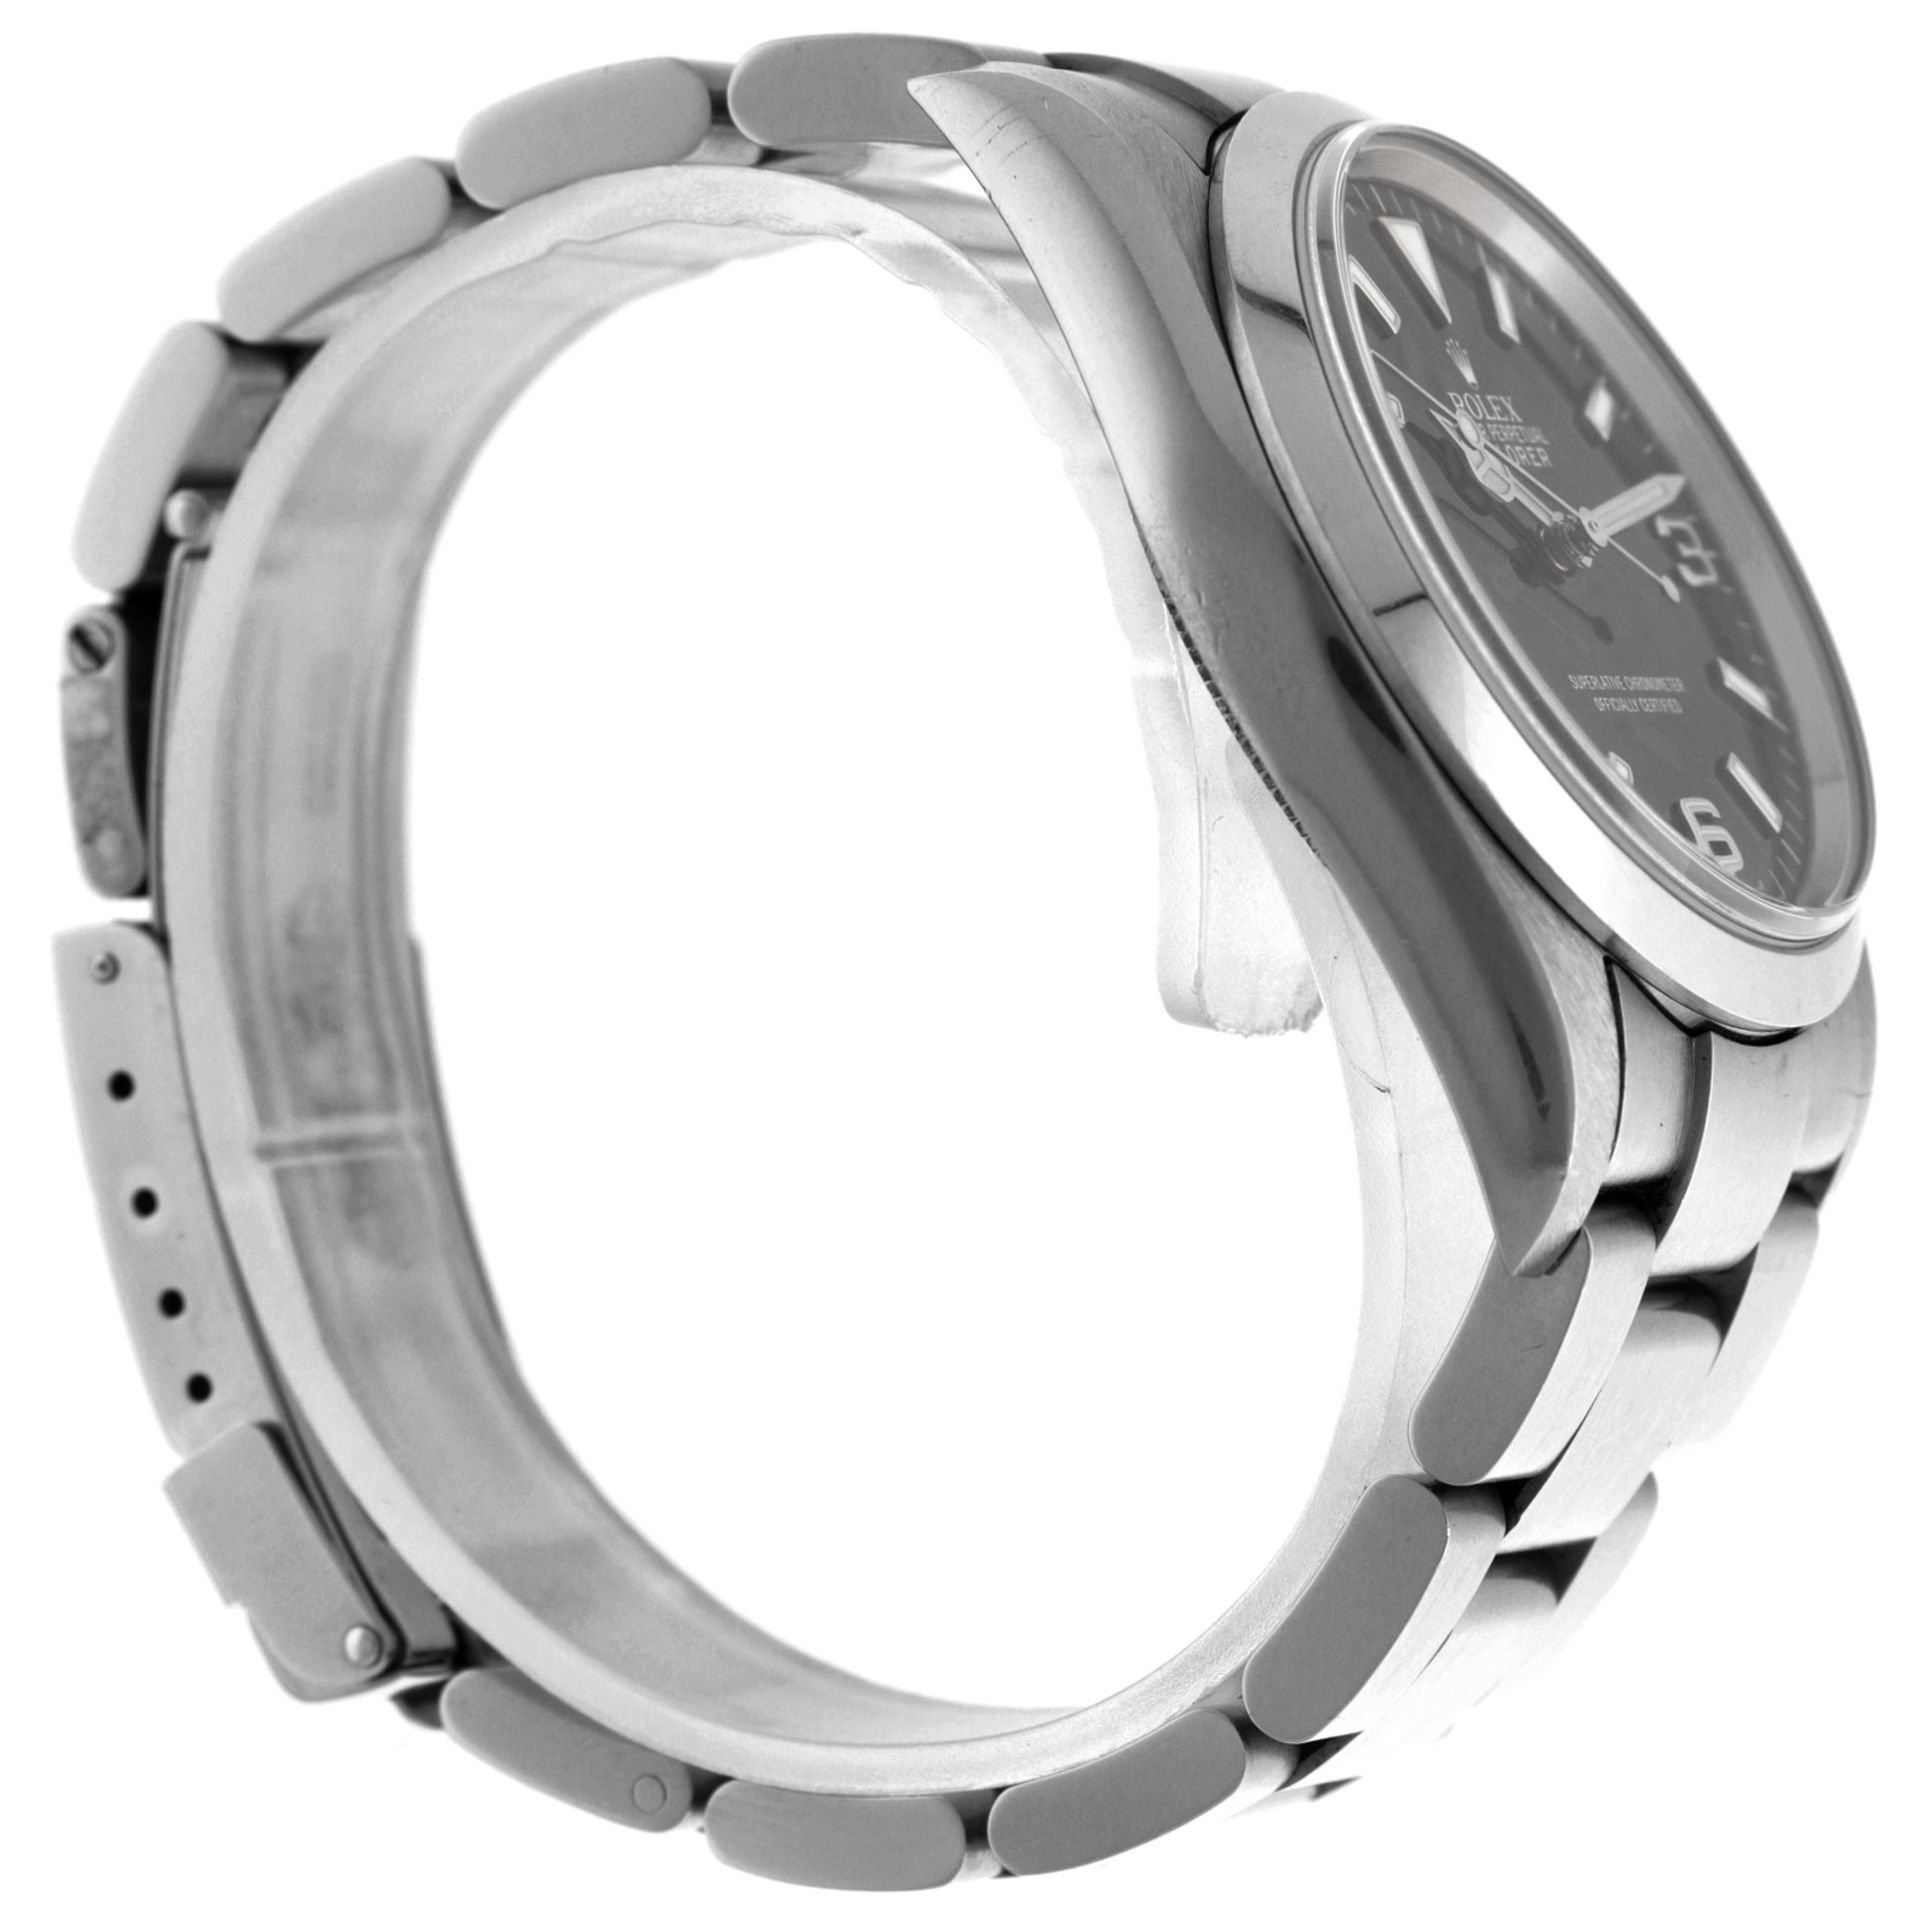 No Reserve - Rolex Explorer 114270 - Men's watch - 2006. - Image 4 of 6